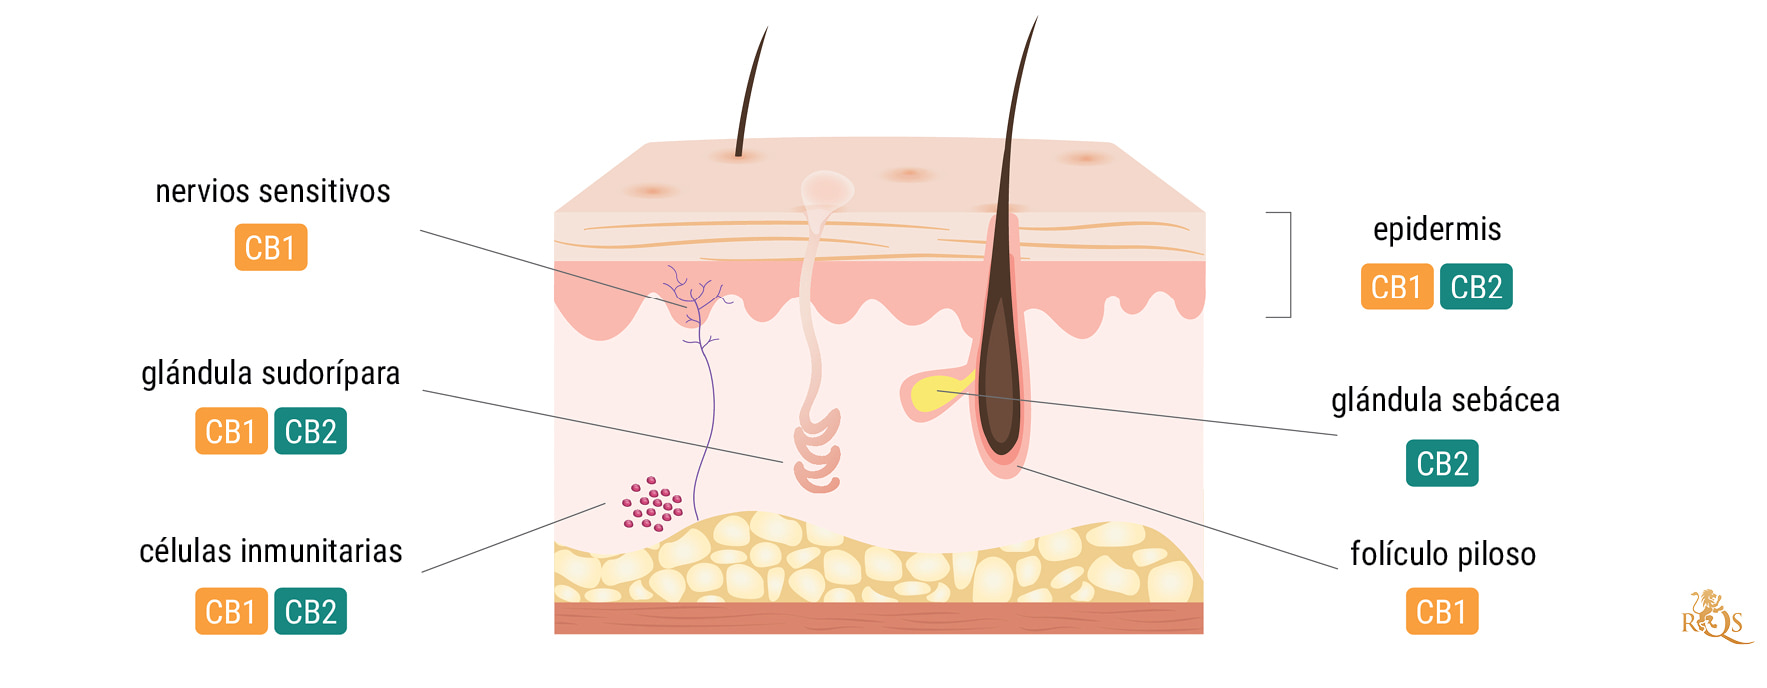 El sistema endocannabinoide y la piel